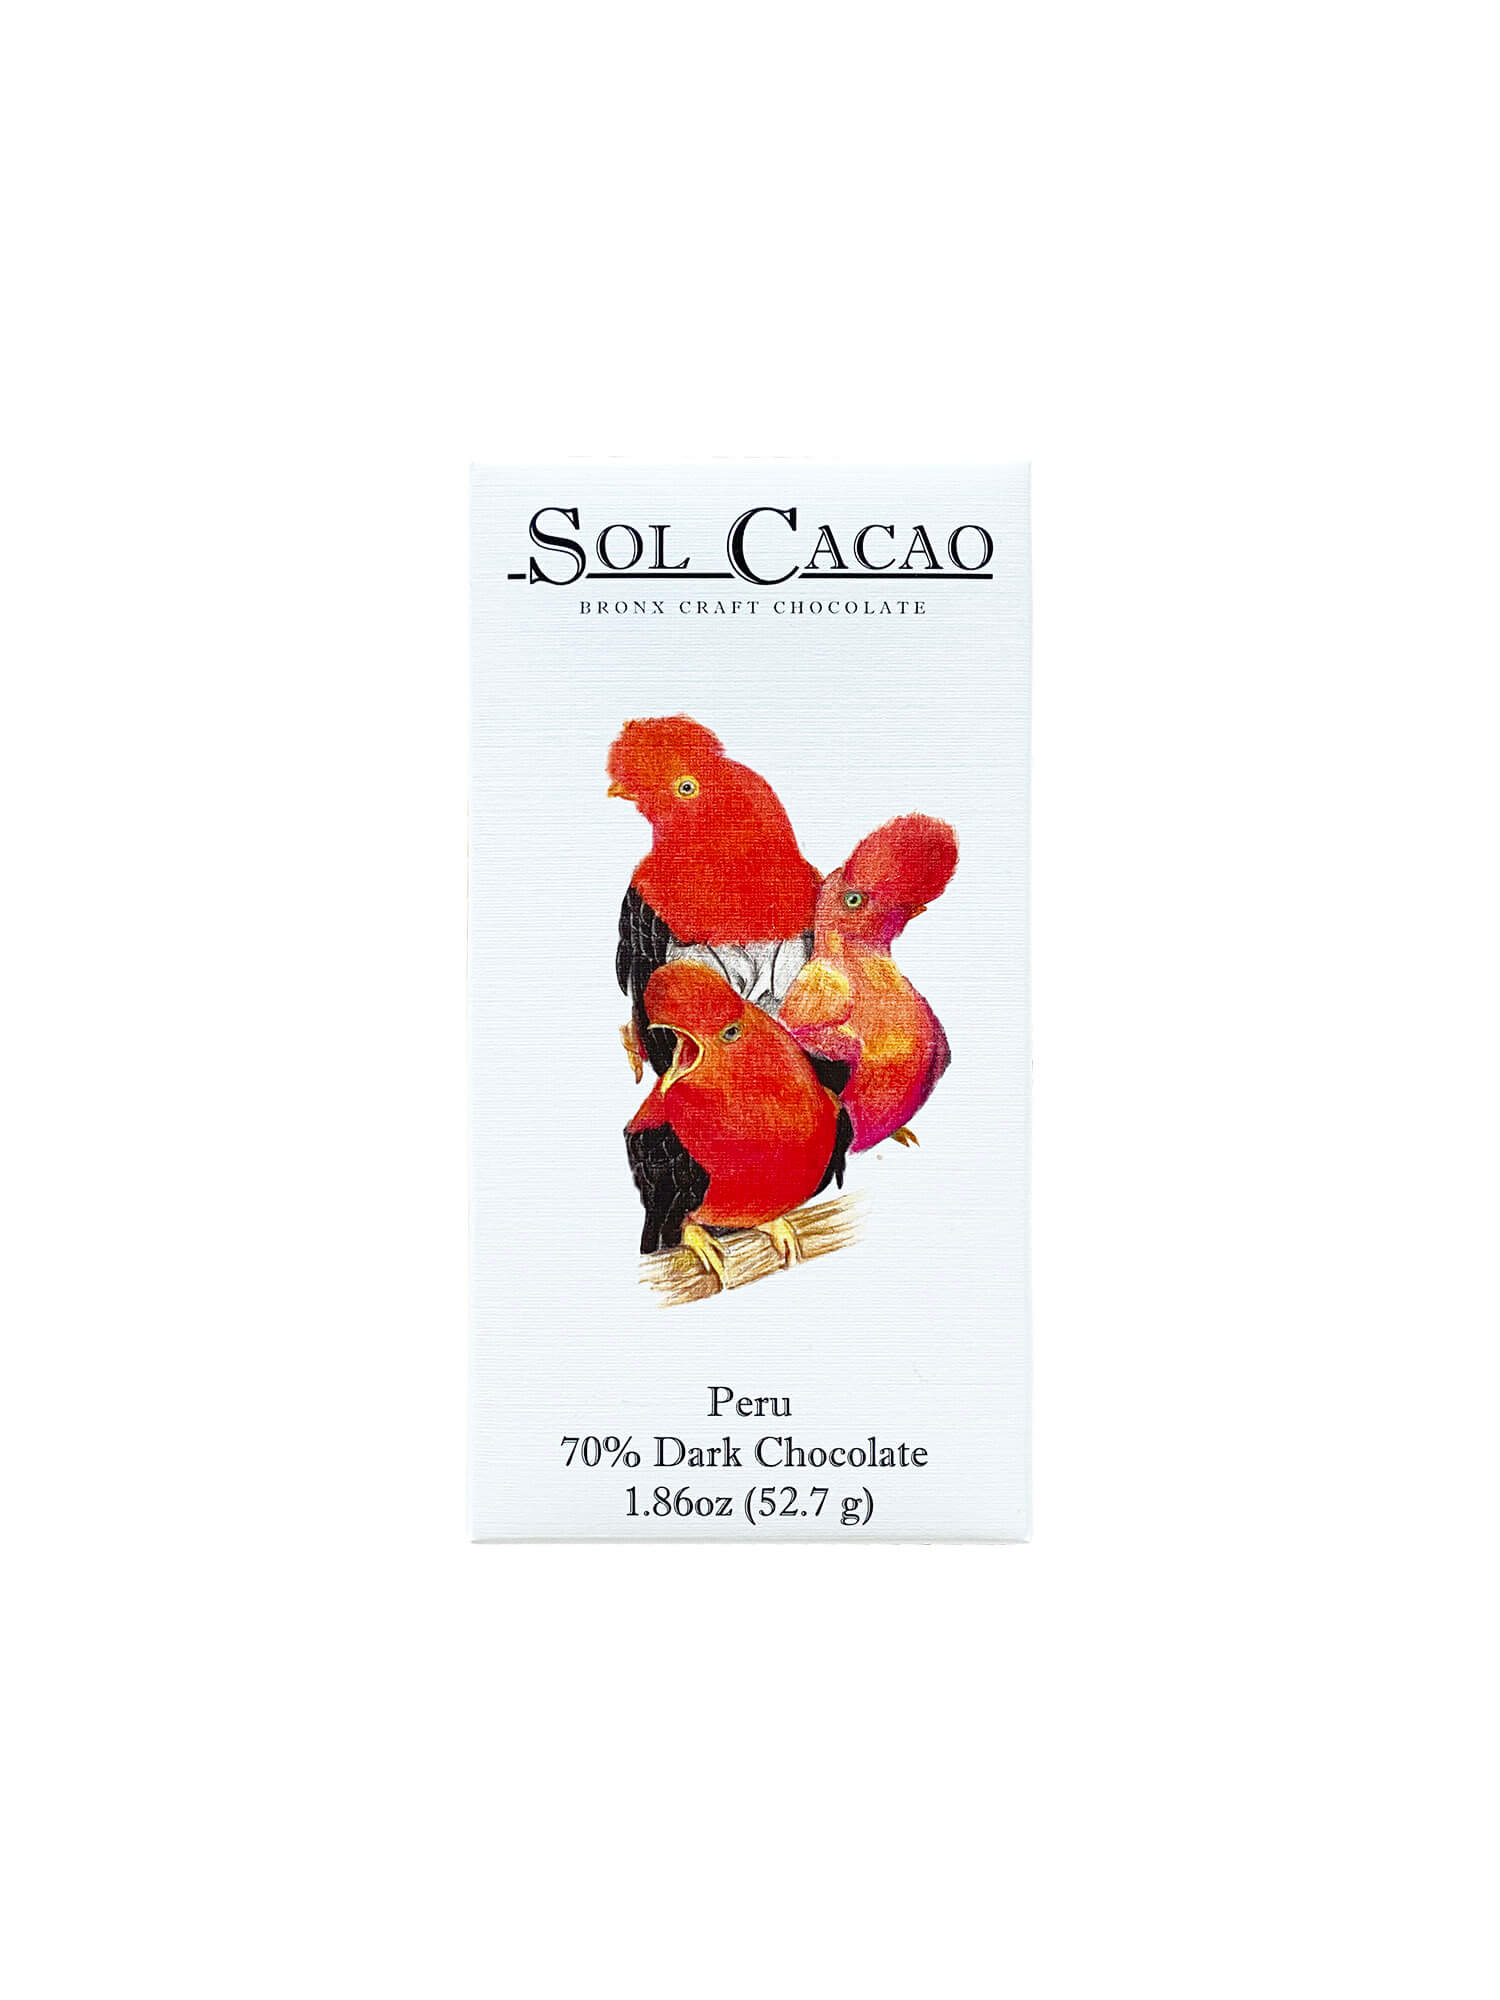 70% Peru Chocolate - Sol Cacao - Mitzie Mee Shop